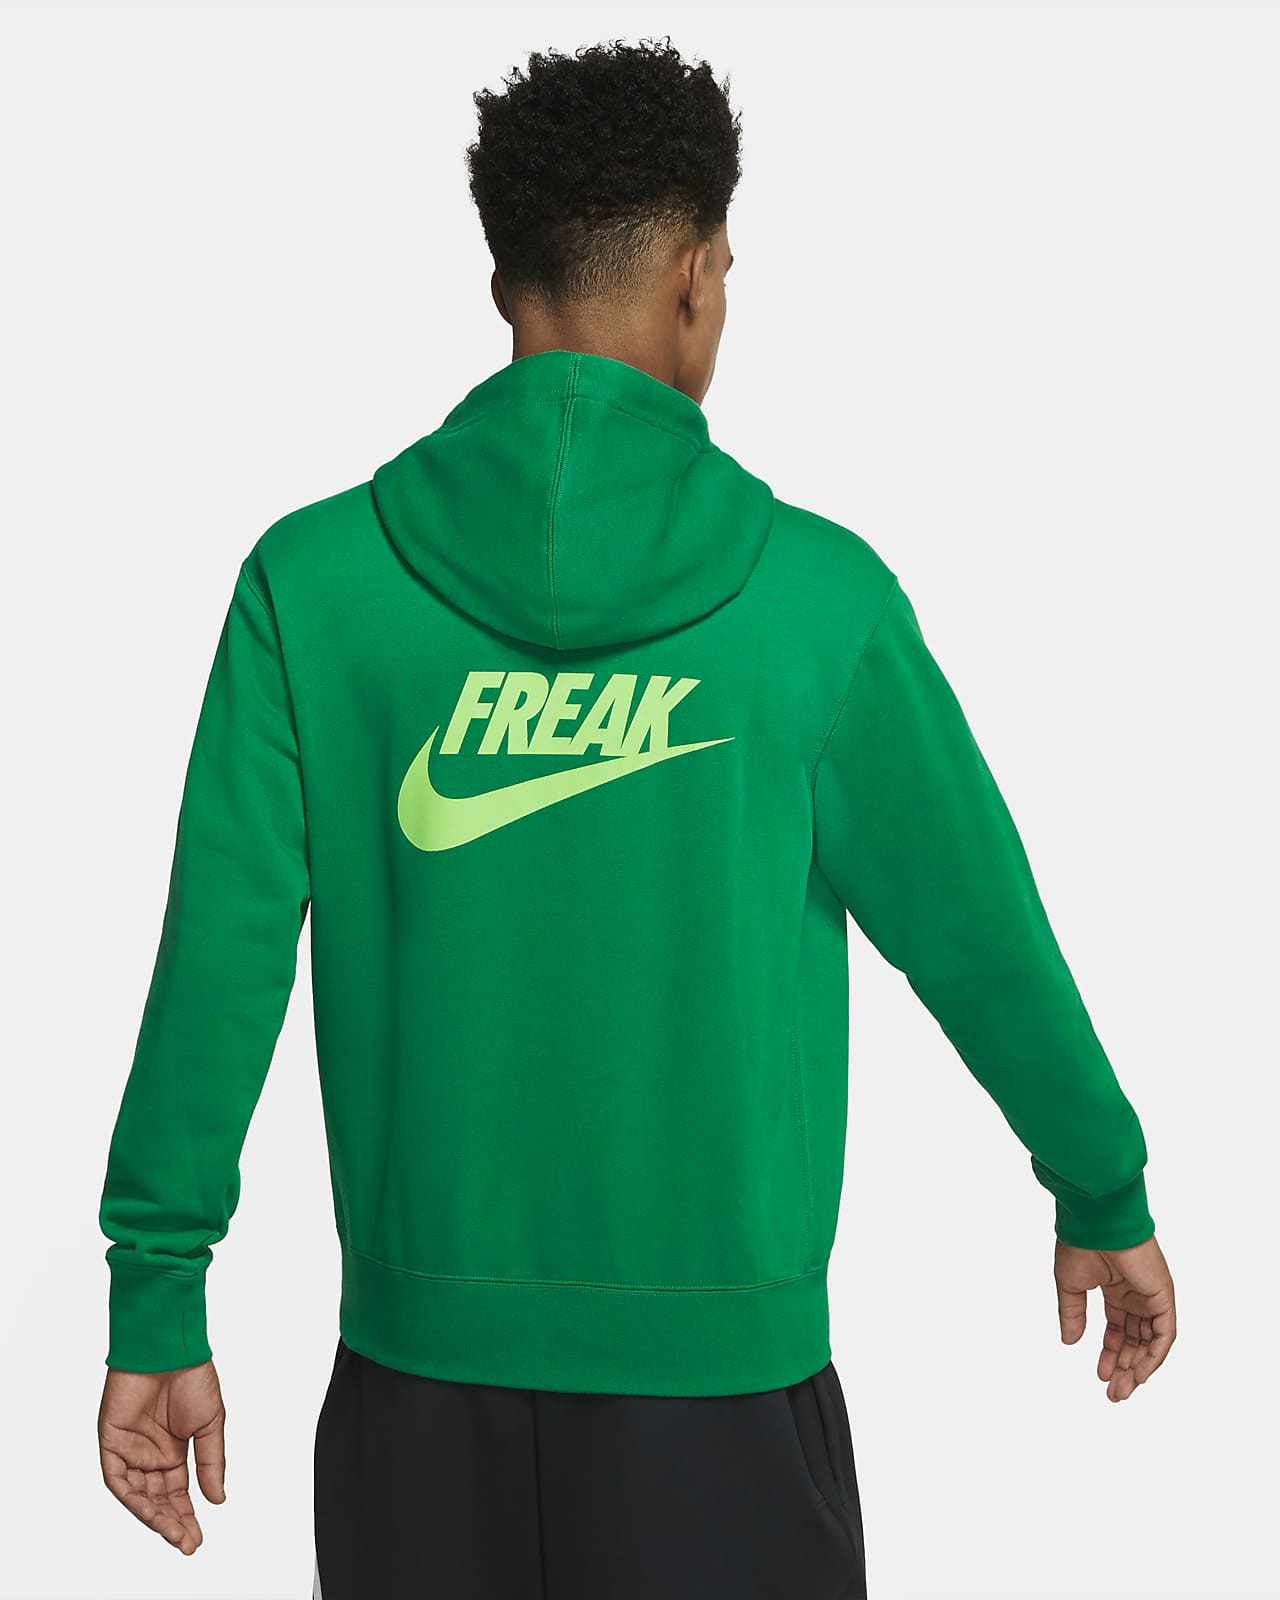 freak hoodie nike